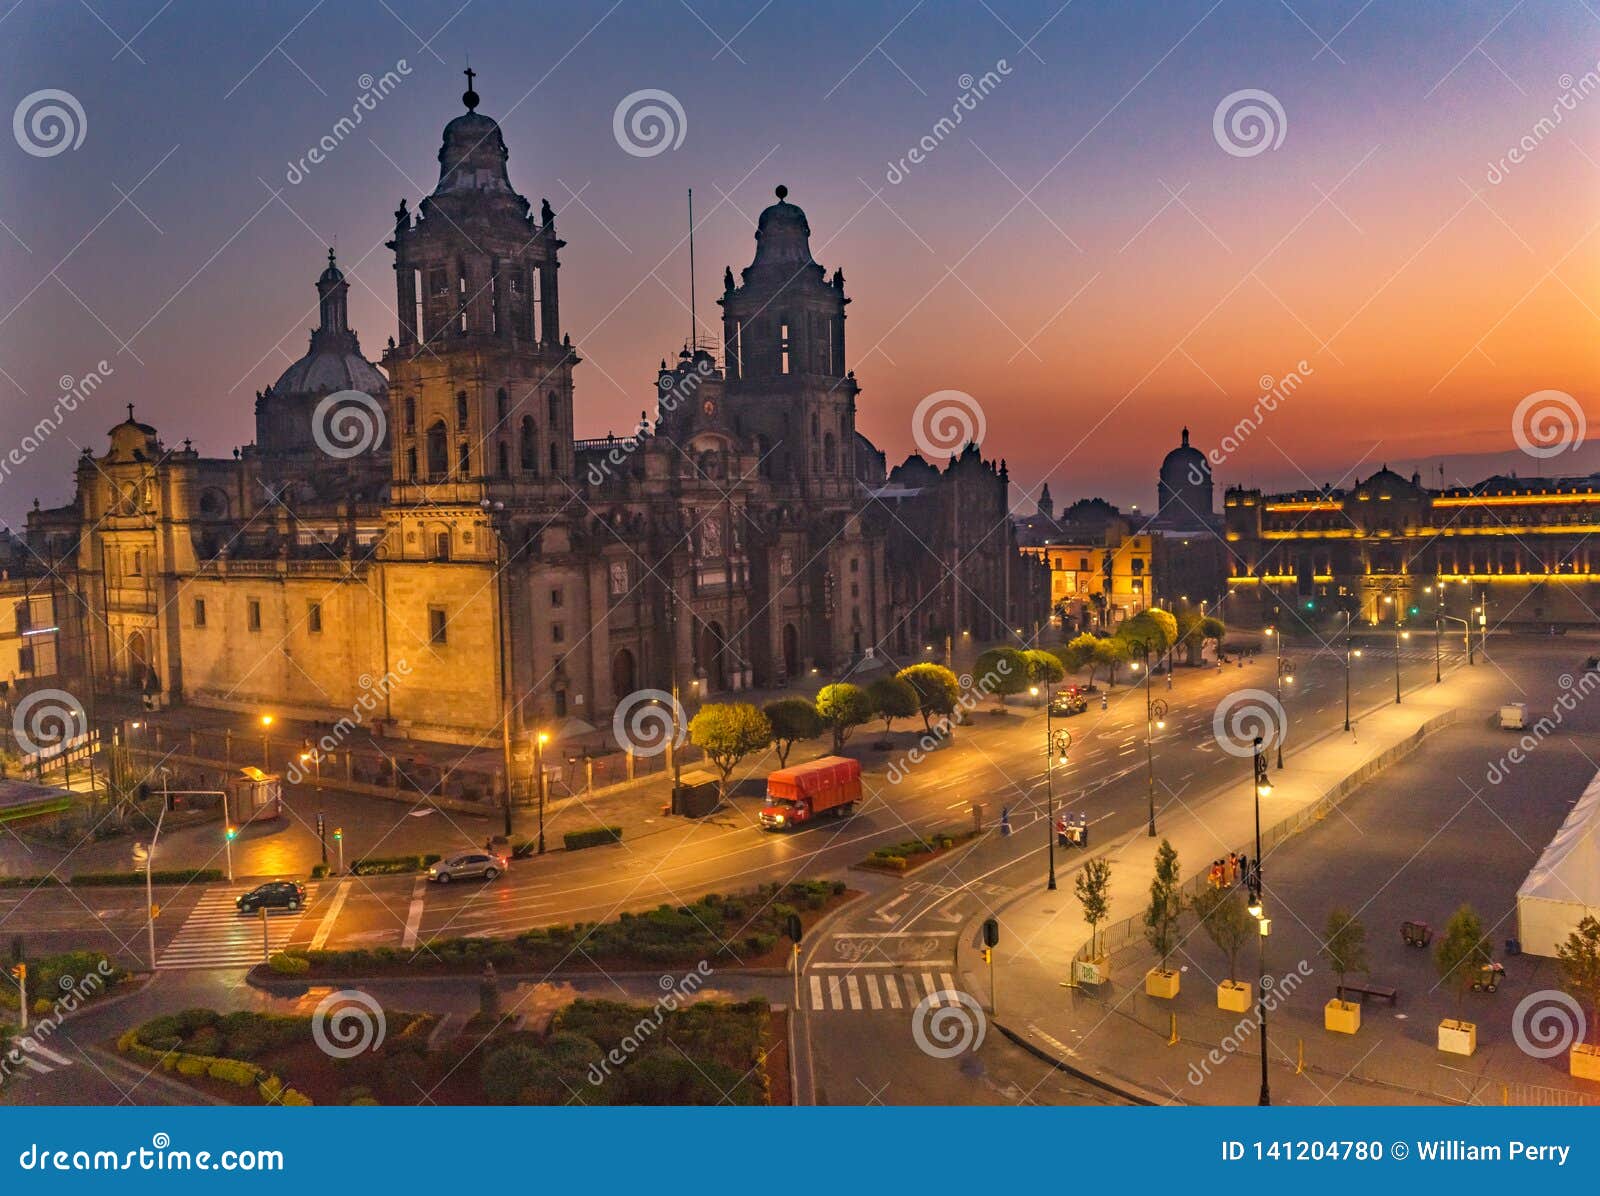 metropolitan cathedral sunrise zocalo mexico city mexico